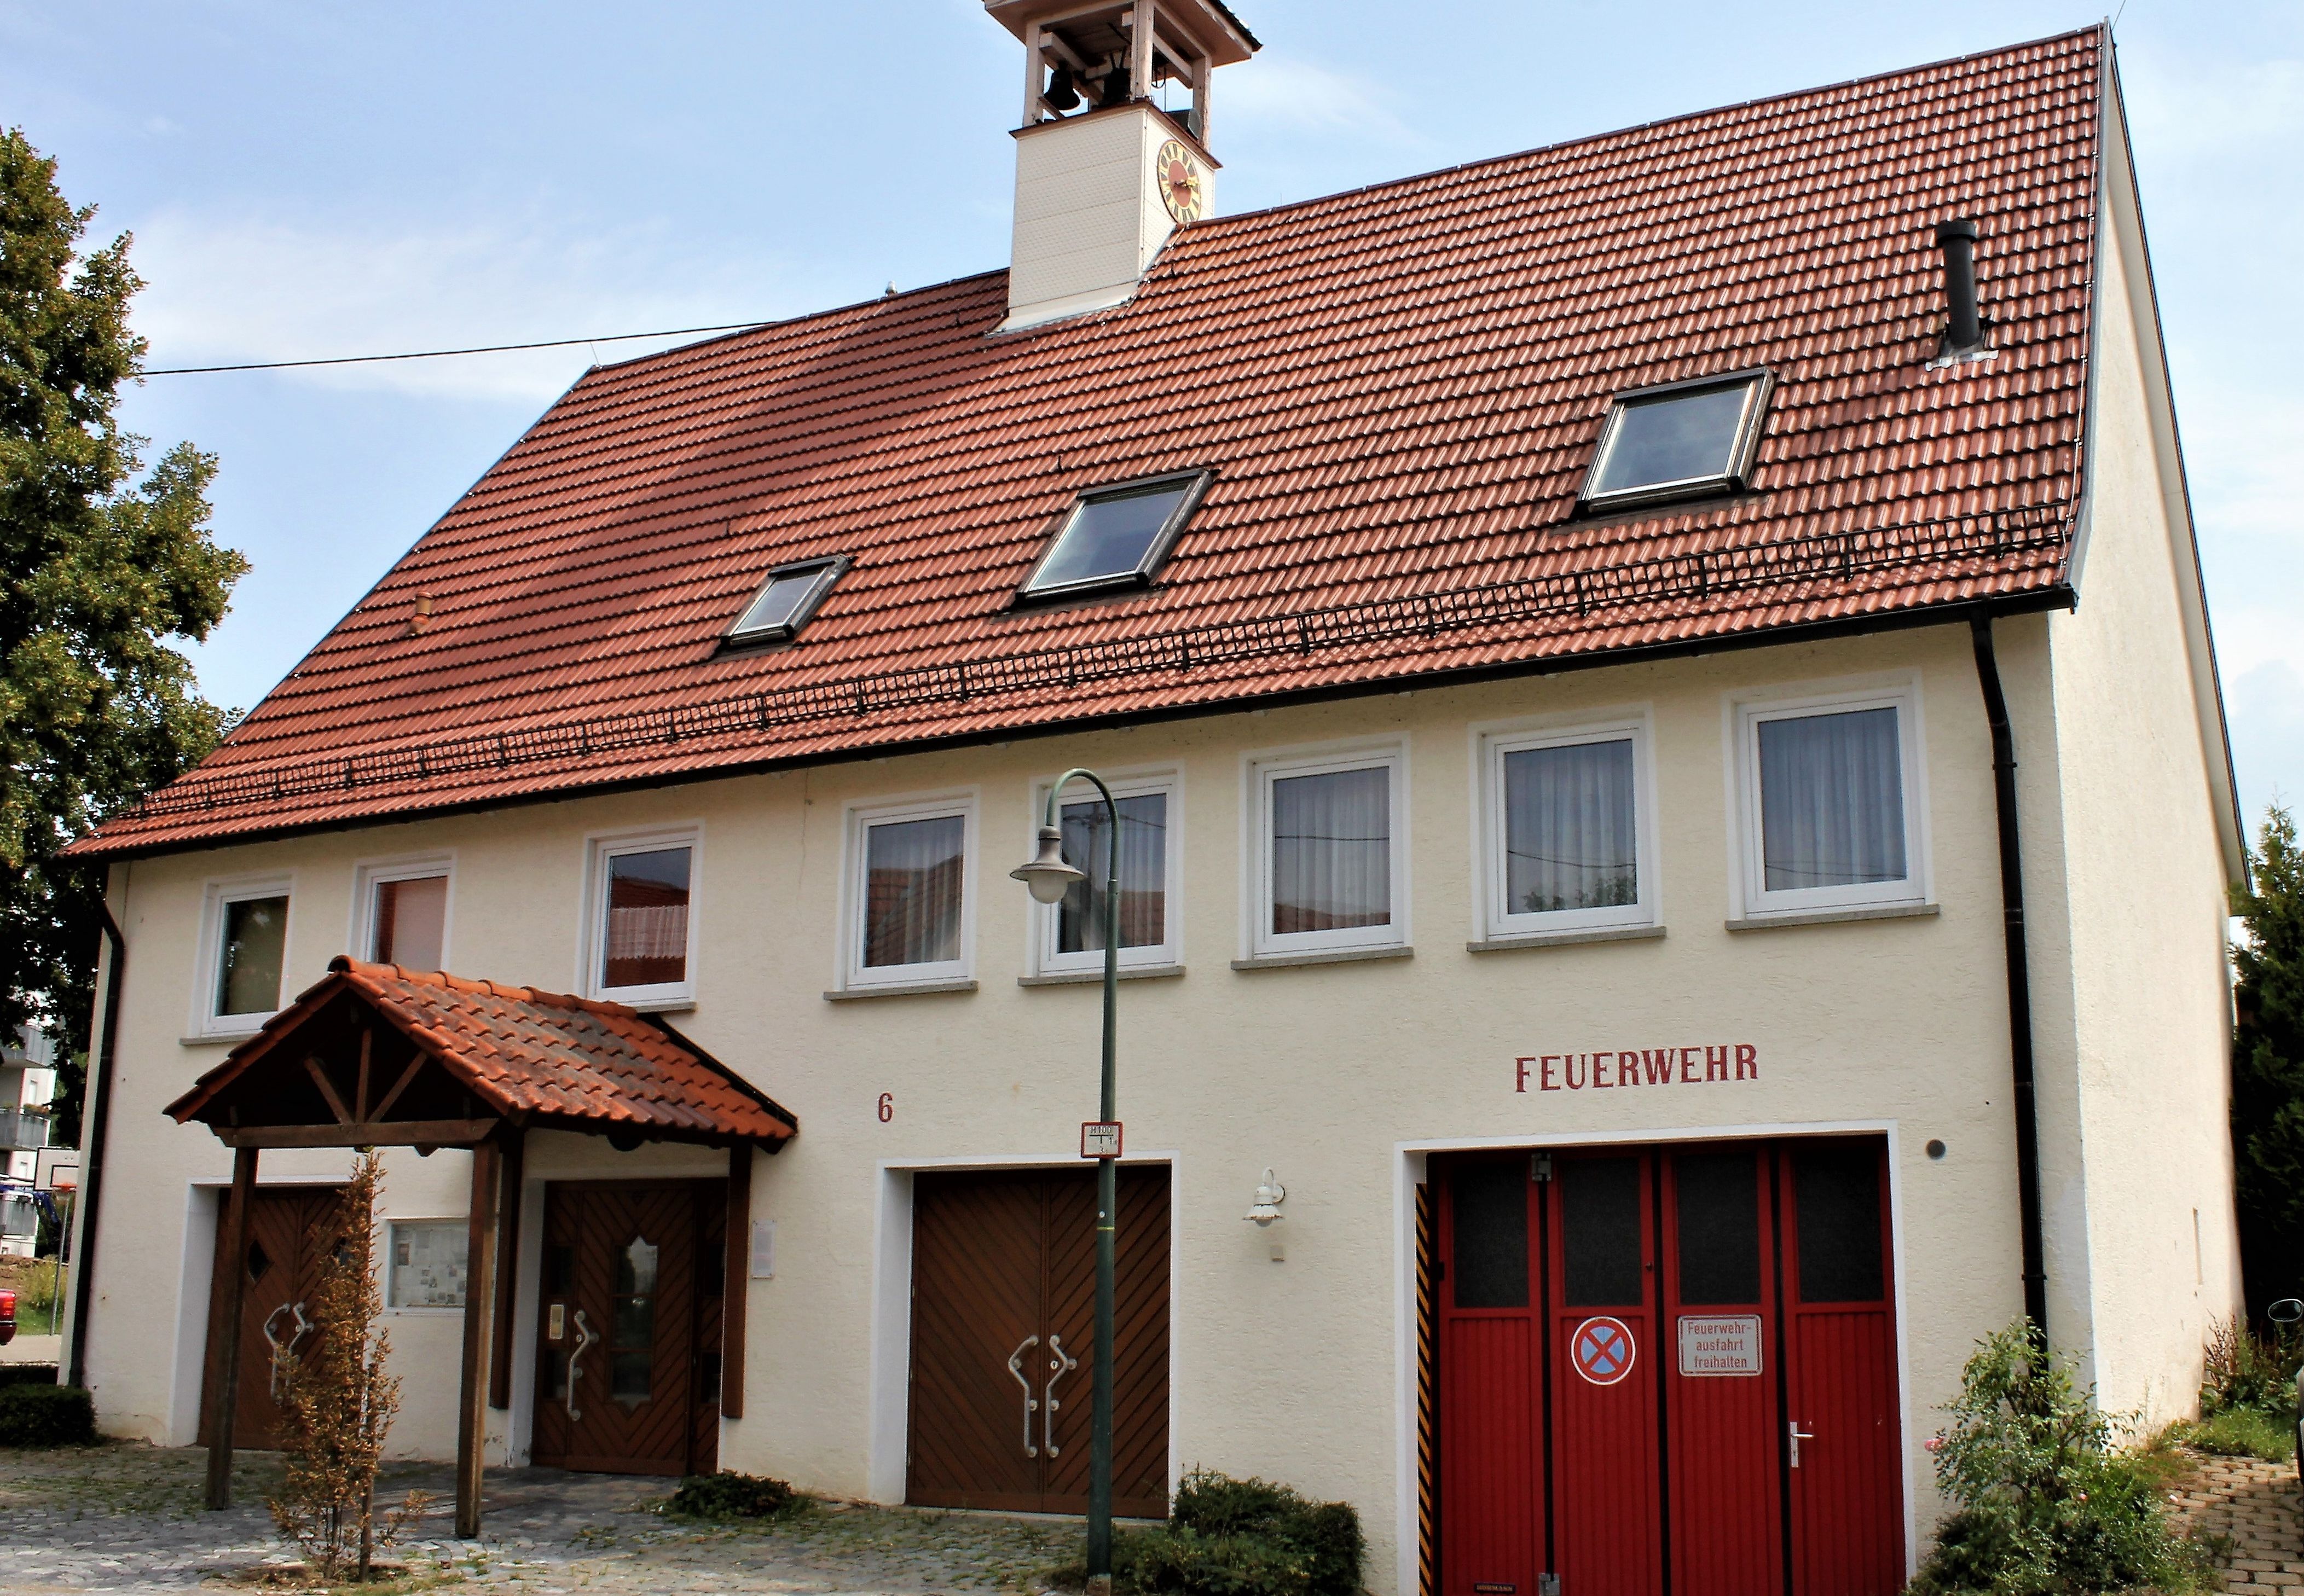                                                     Bürgerhaus Kleinbettlingen                                    